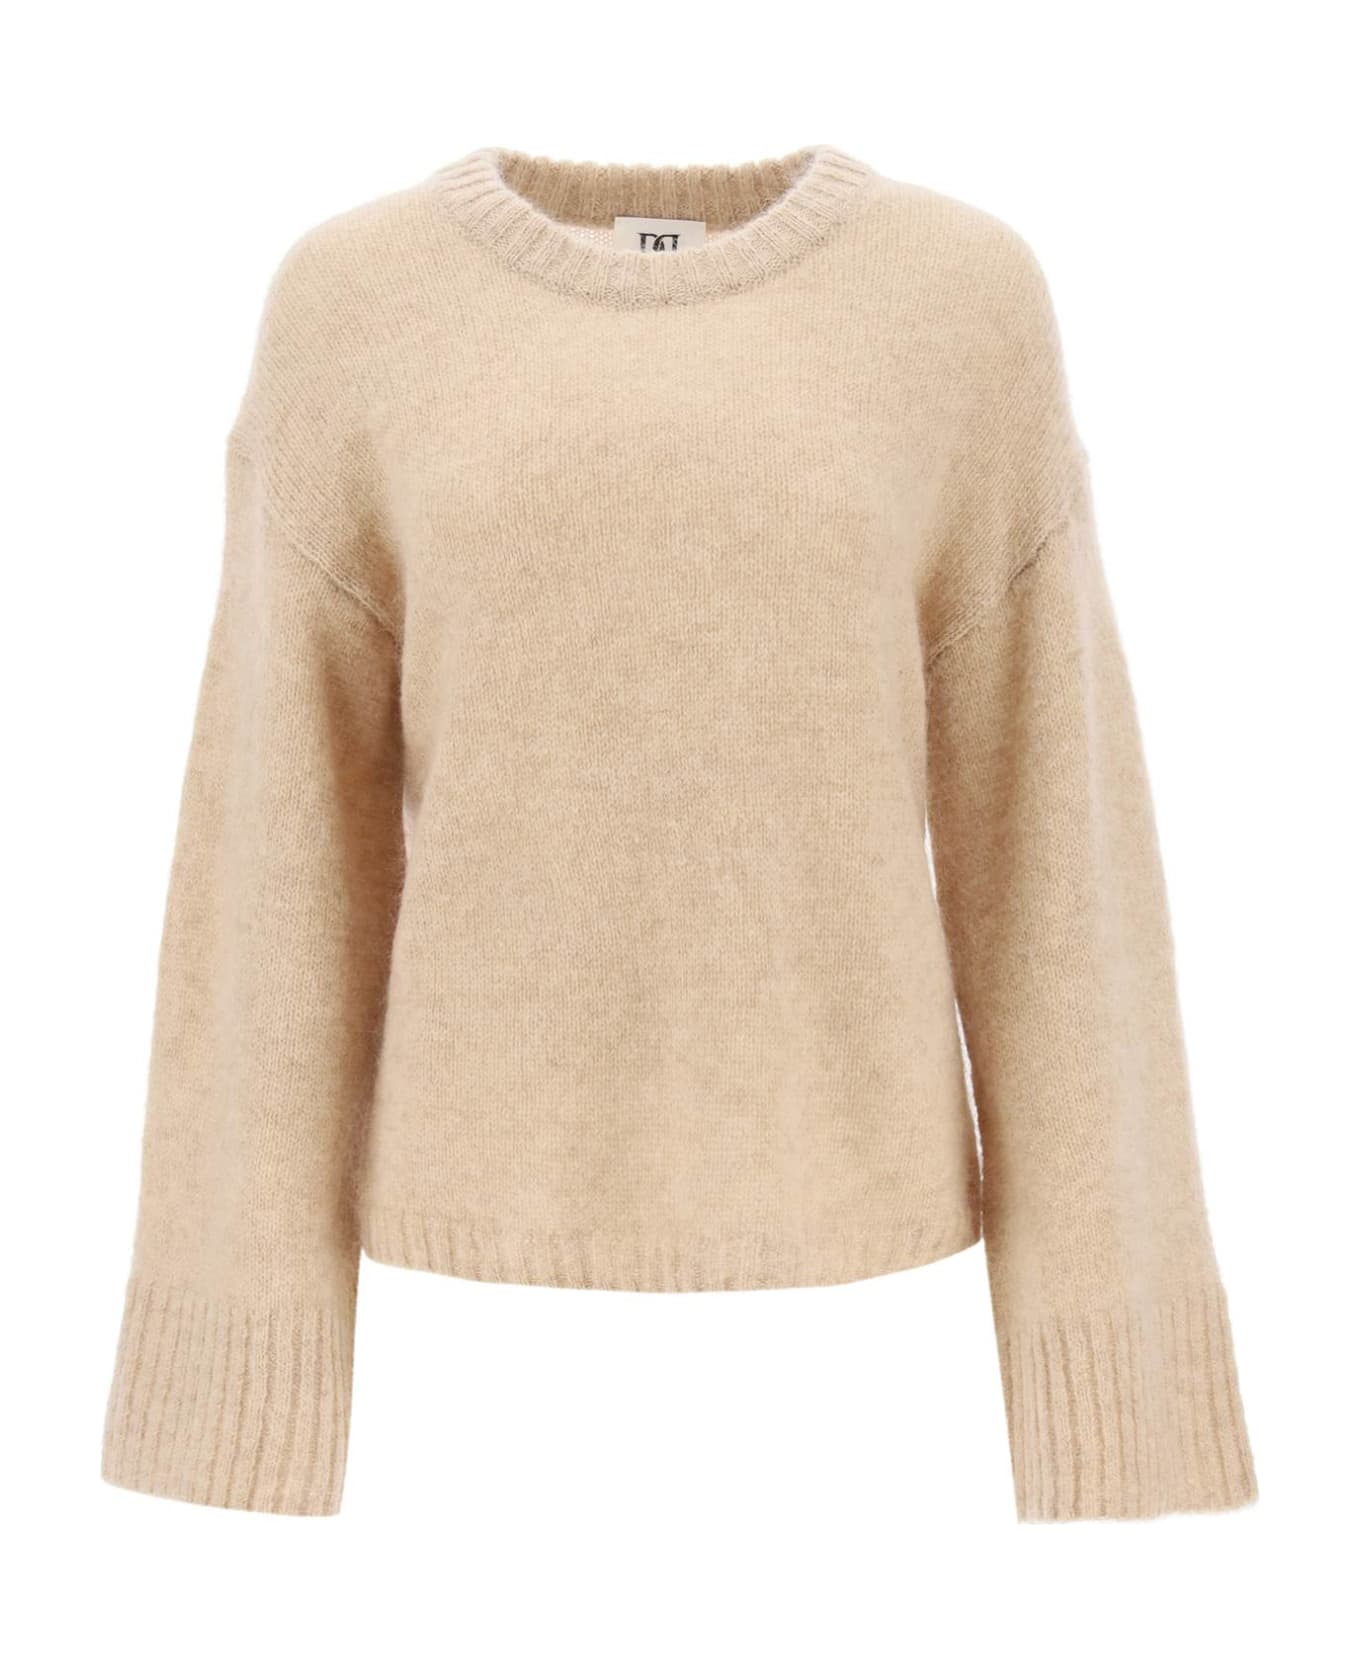 By Malene Birger 'cierra' Sweater In Wool And Mohair - TWILL BEIGE (Beige)